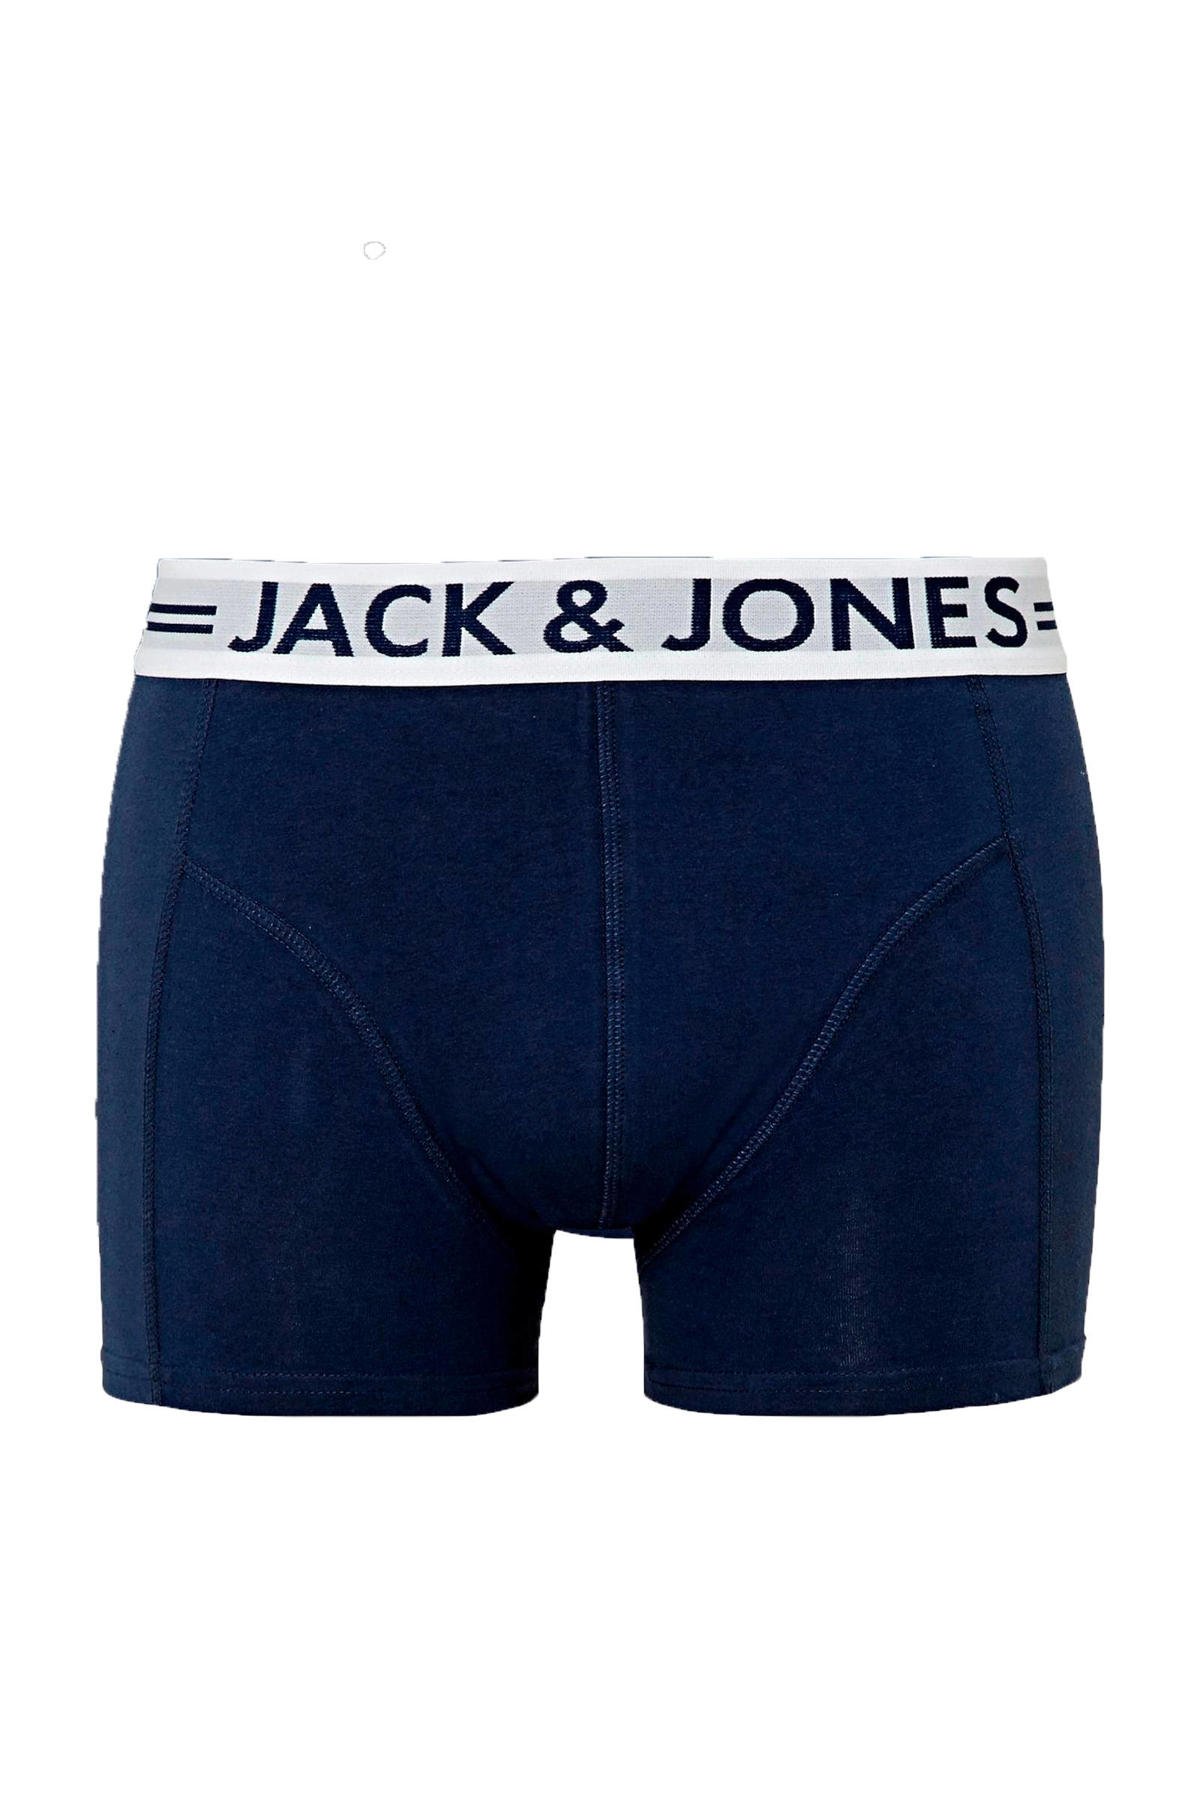 gebruiker Kanon Soeverein JACK & JONES boxershort JACSENSE donkerblauw | wehkamp